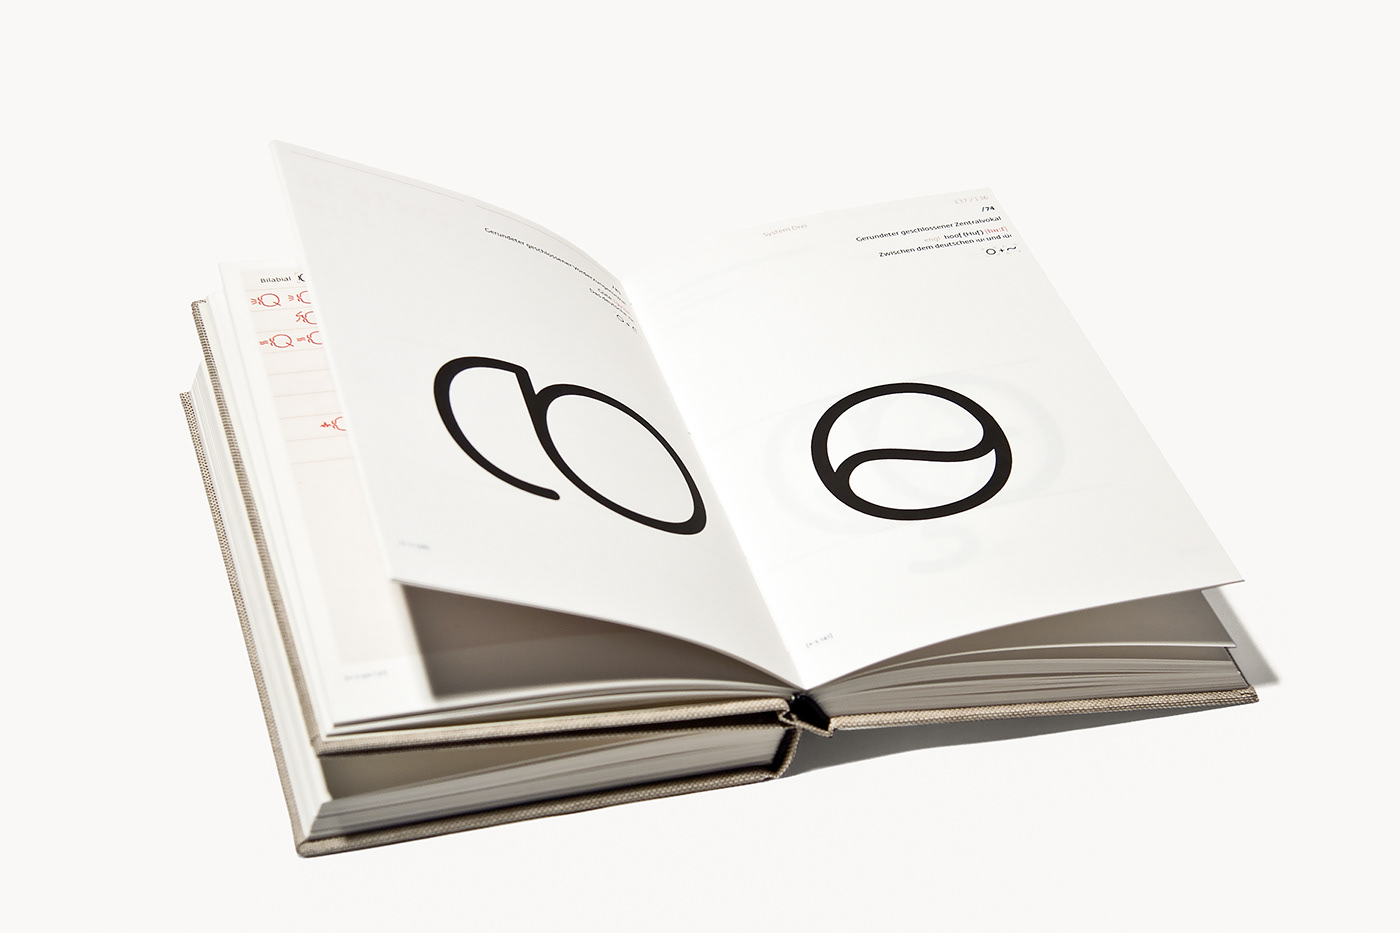 Buchgestaltung design editorial design  FH Mainz IPA Lautschrift typografie